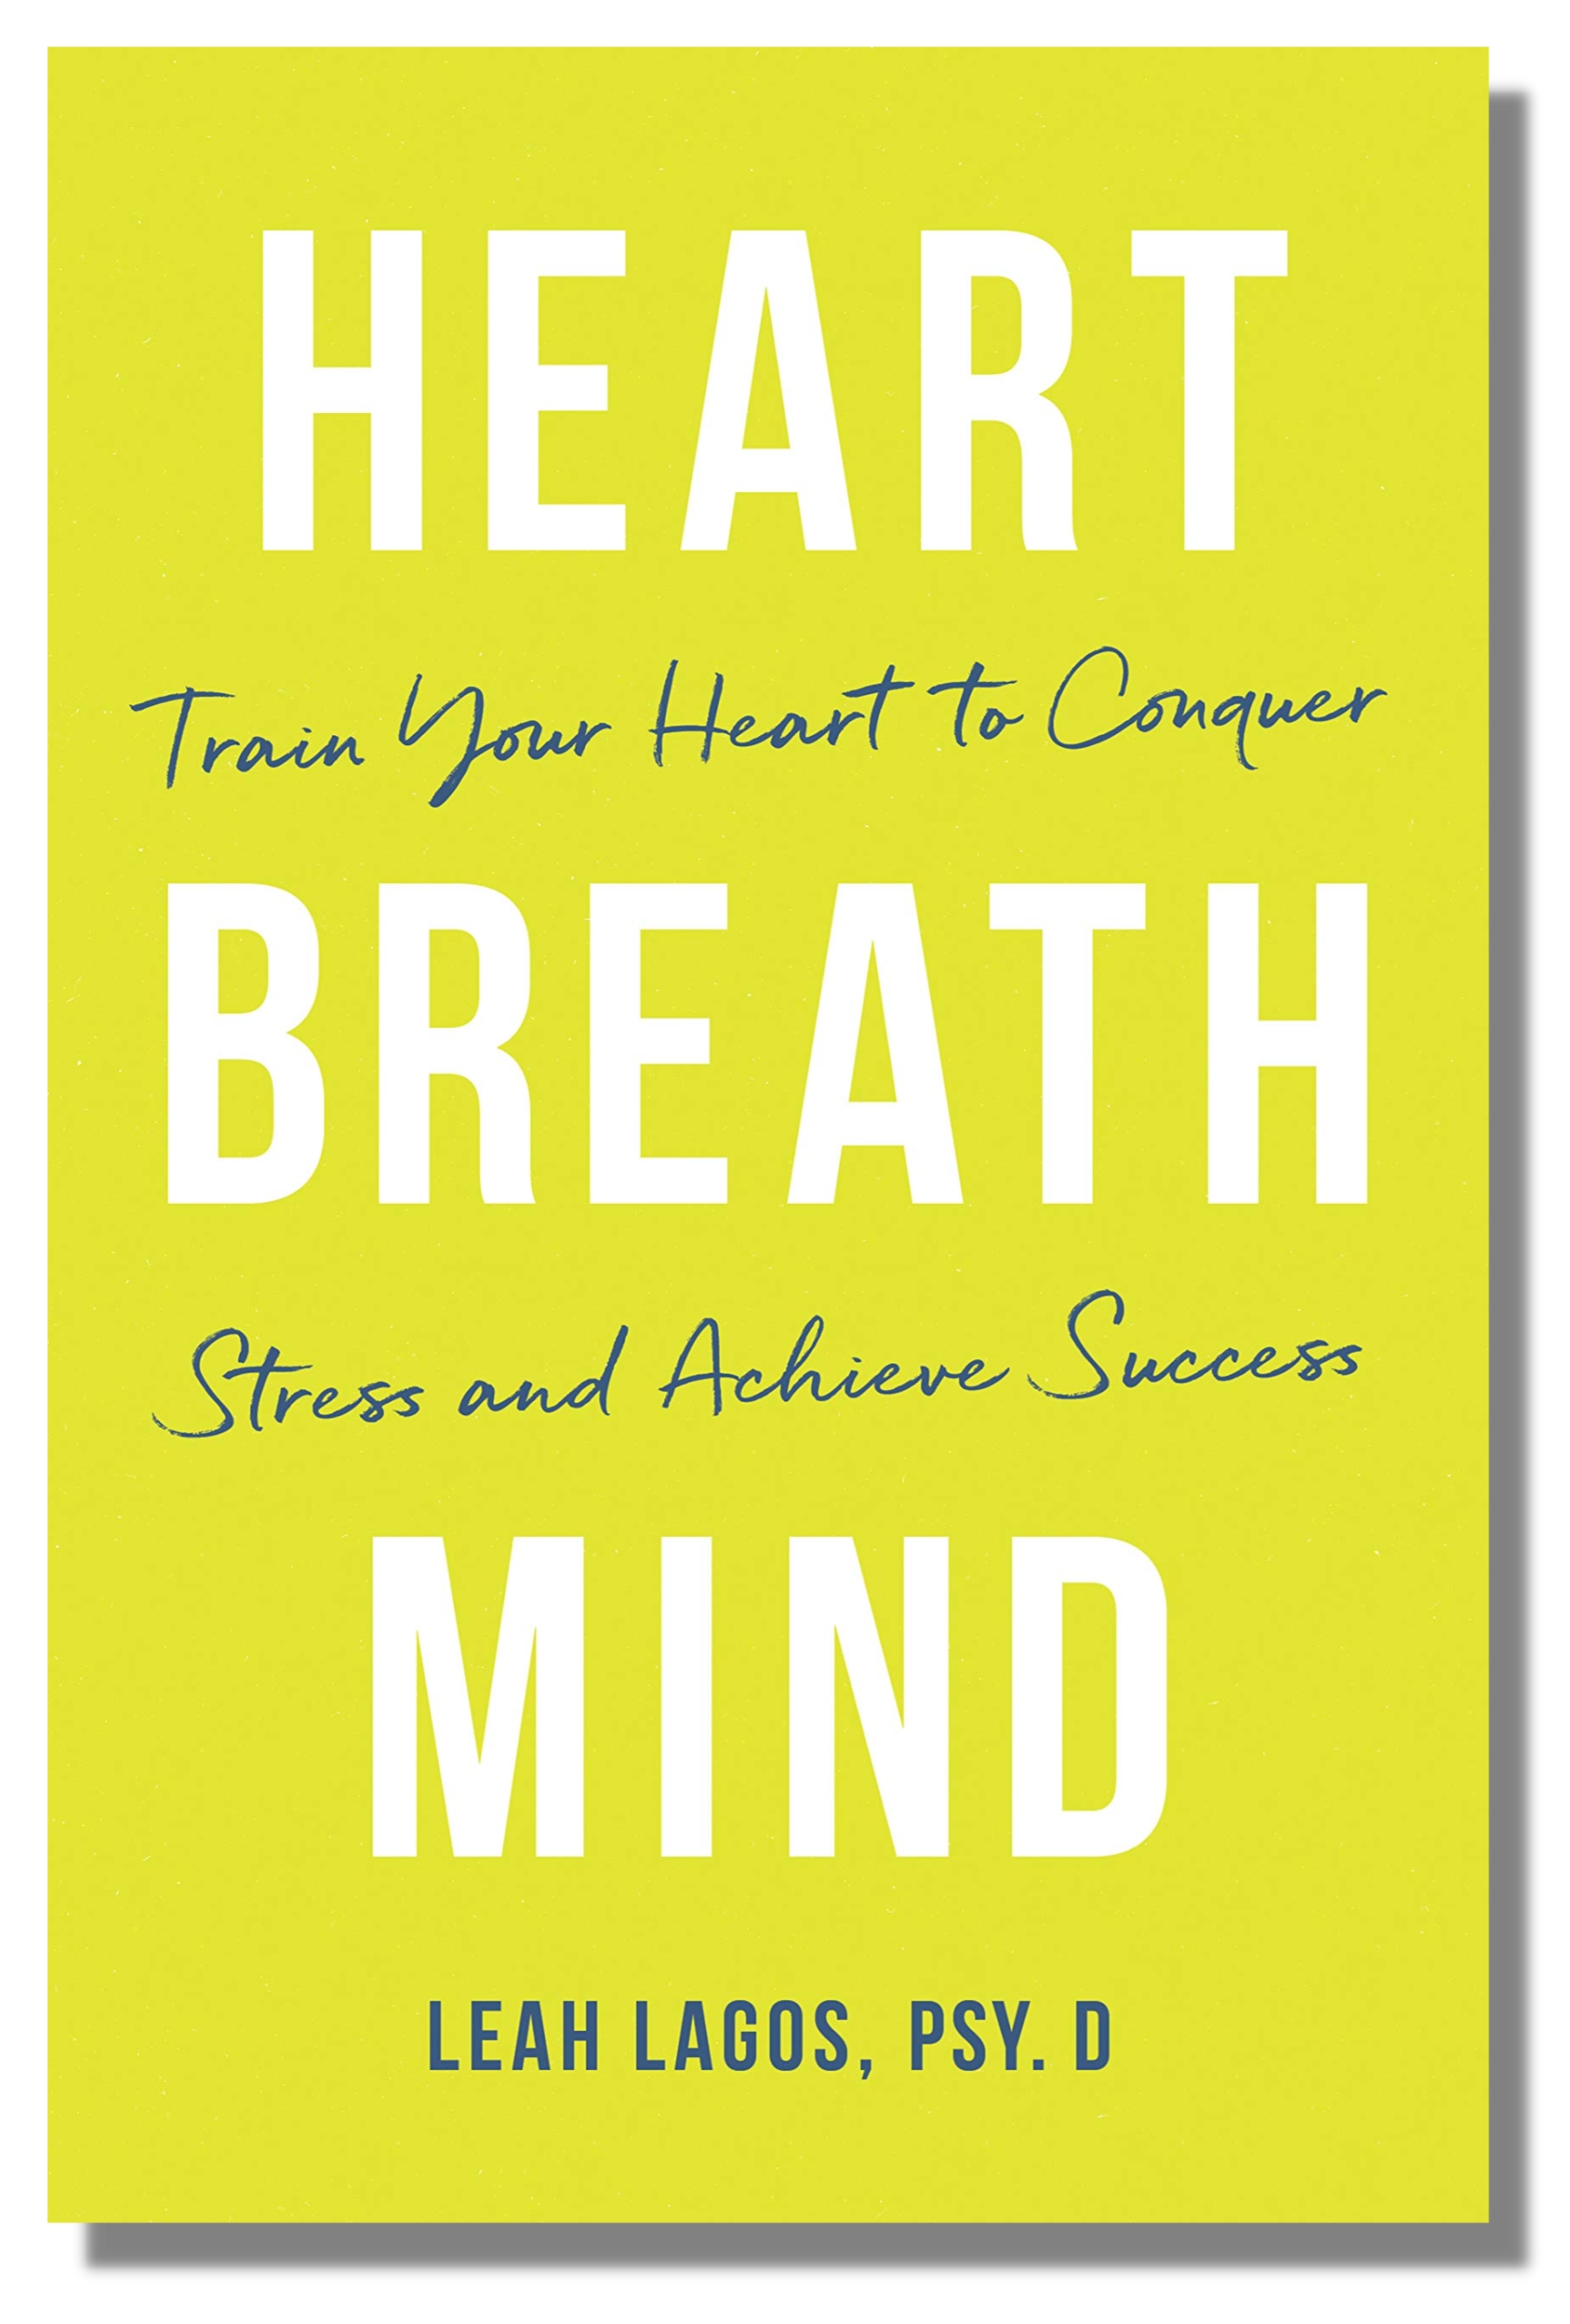 Heart Breath Mind Leah Lagos book cover 2019